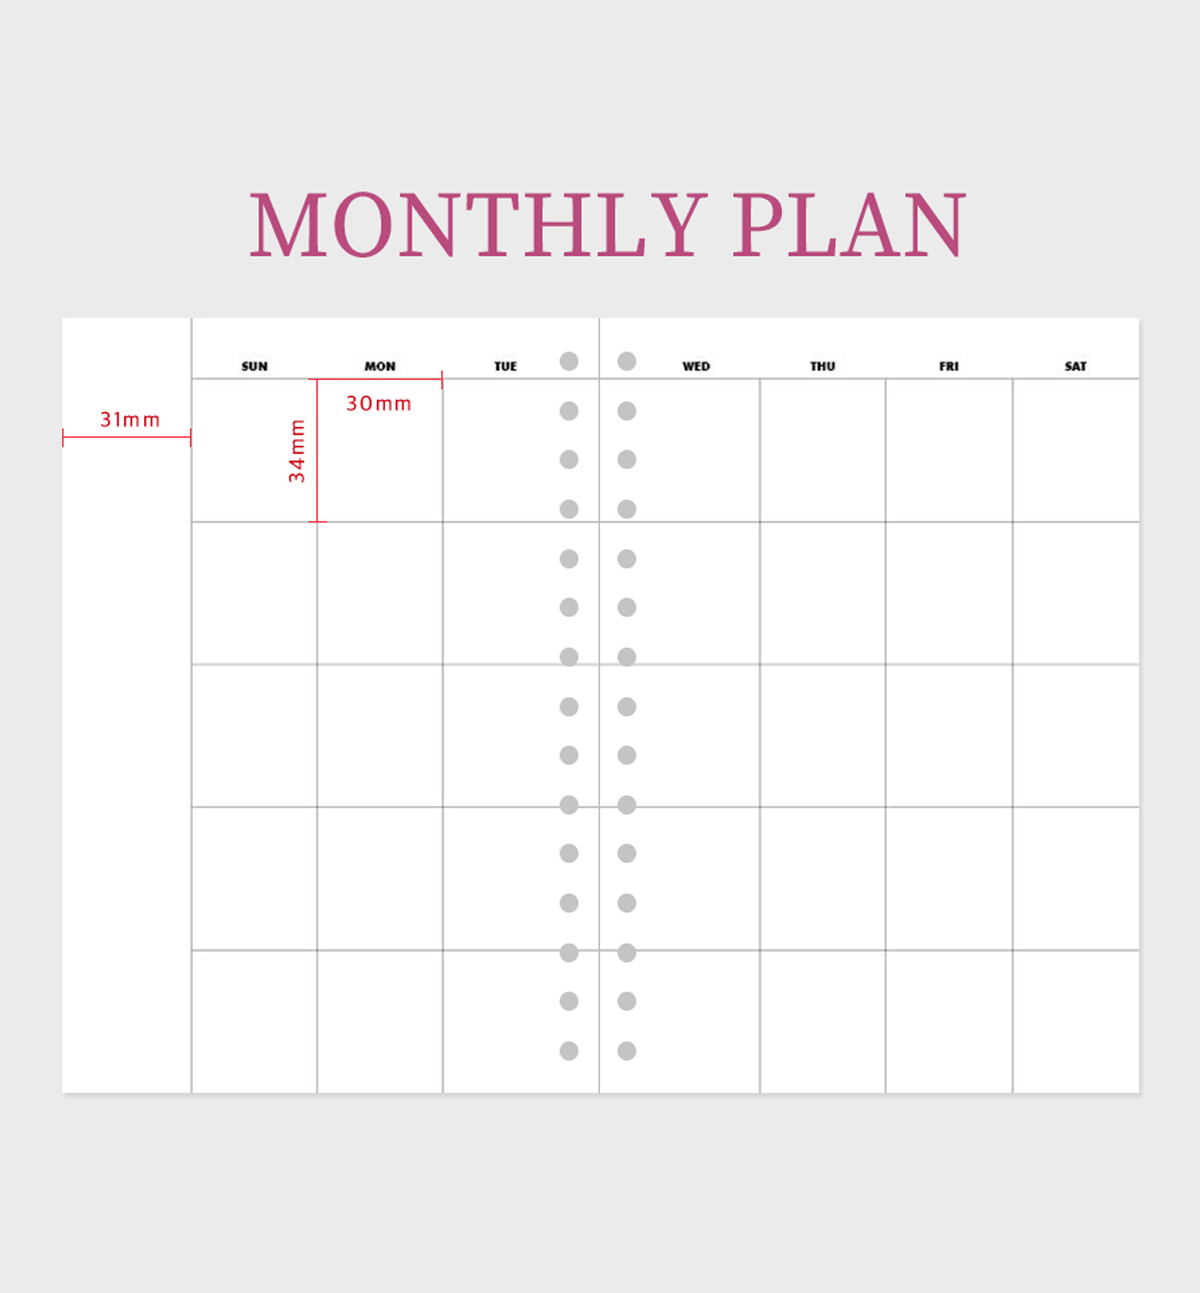 Storage Weekly Planner Ver.2 [6 Months]